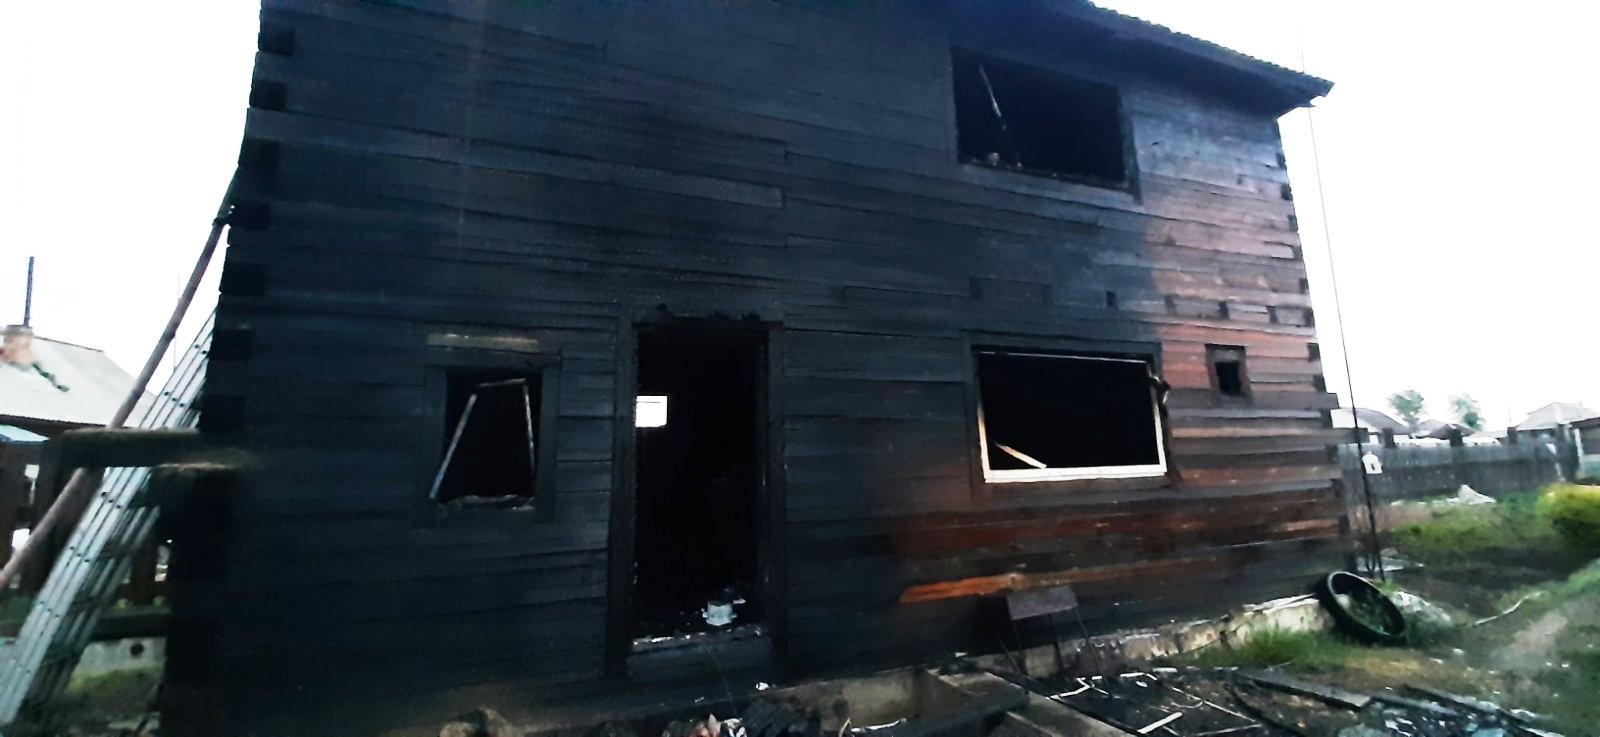 Родители 8-летней девочки погибли на пожаре в Иркутском районе